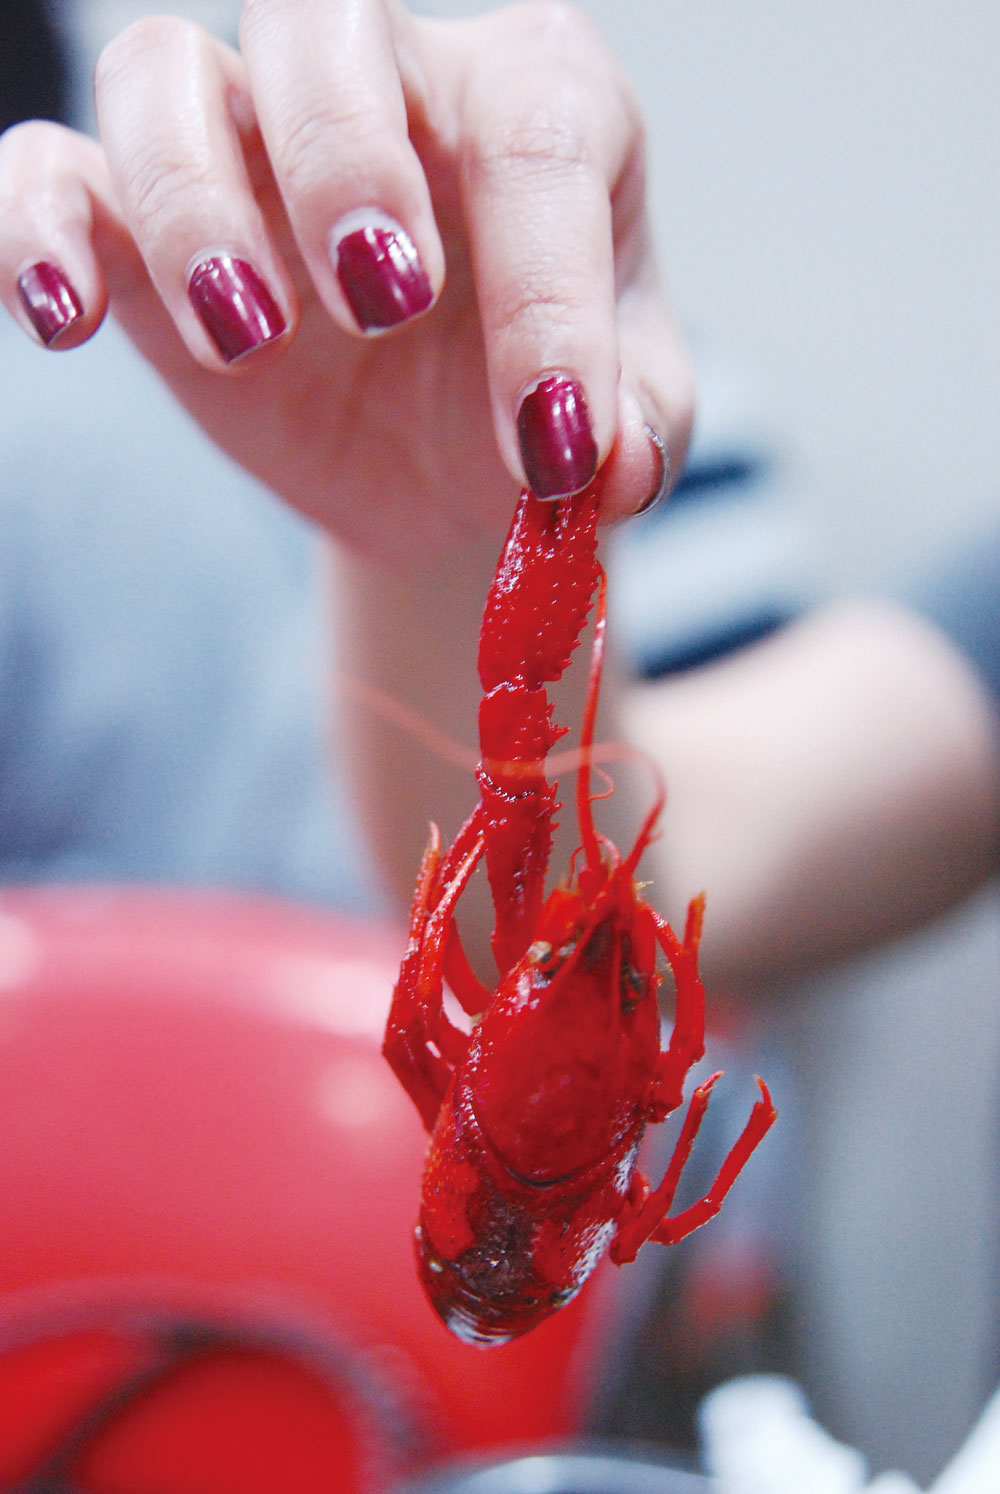 Crayfish (xiaolongxia) in Shanghai